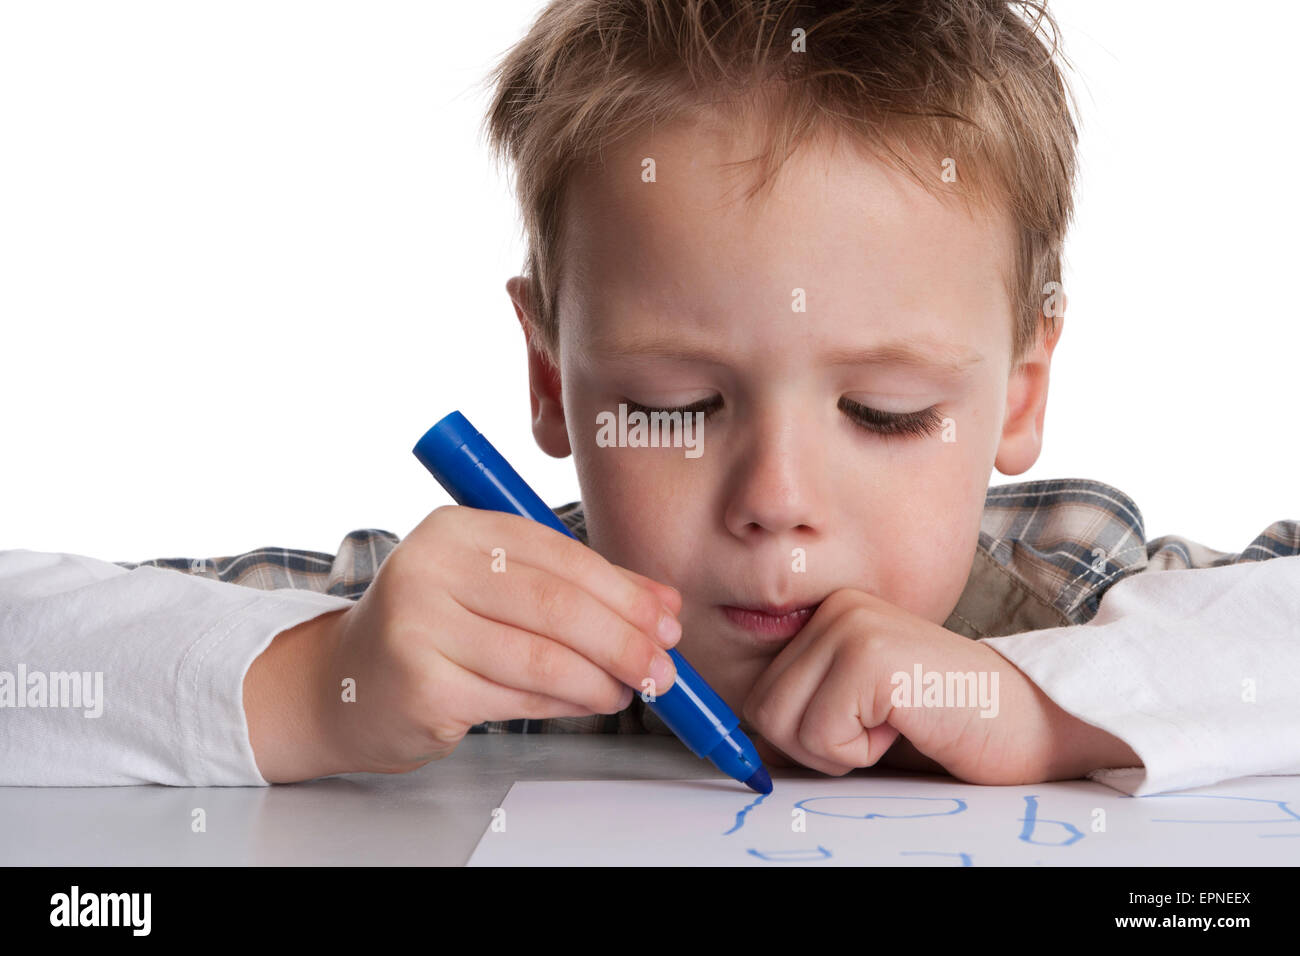 Kleiner Junge macht eine Zeichnung mit einem blauen Filzstift auf weißem Papier Stockfoto